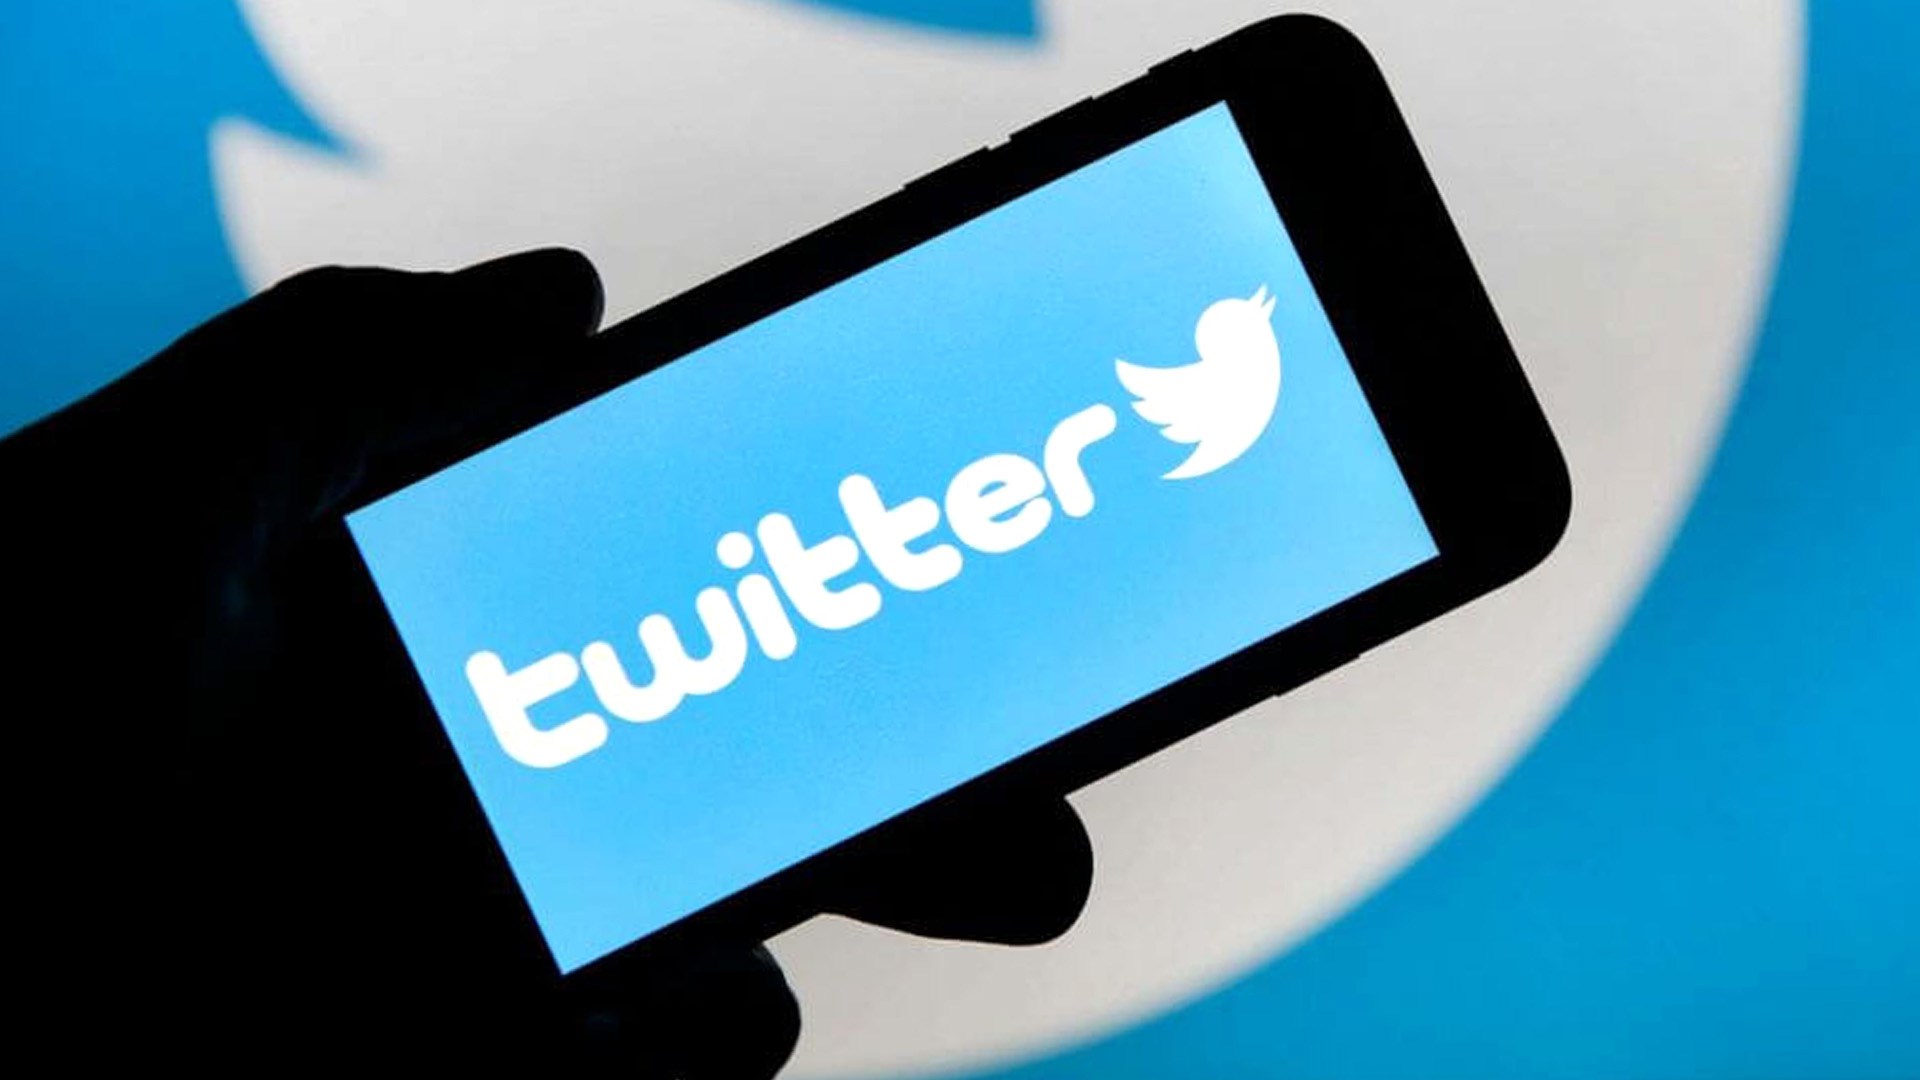 Bakan Yardımcısı: “Twitter’a bant daraltma cezası gelebilir”